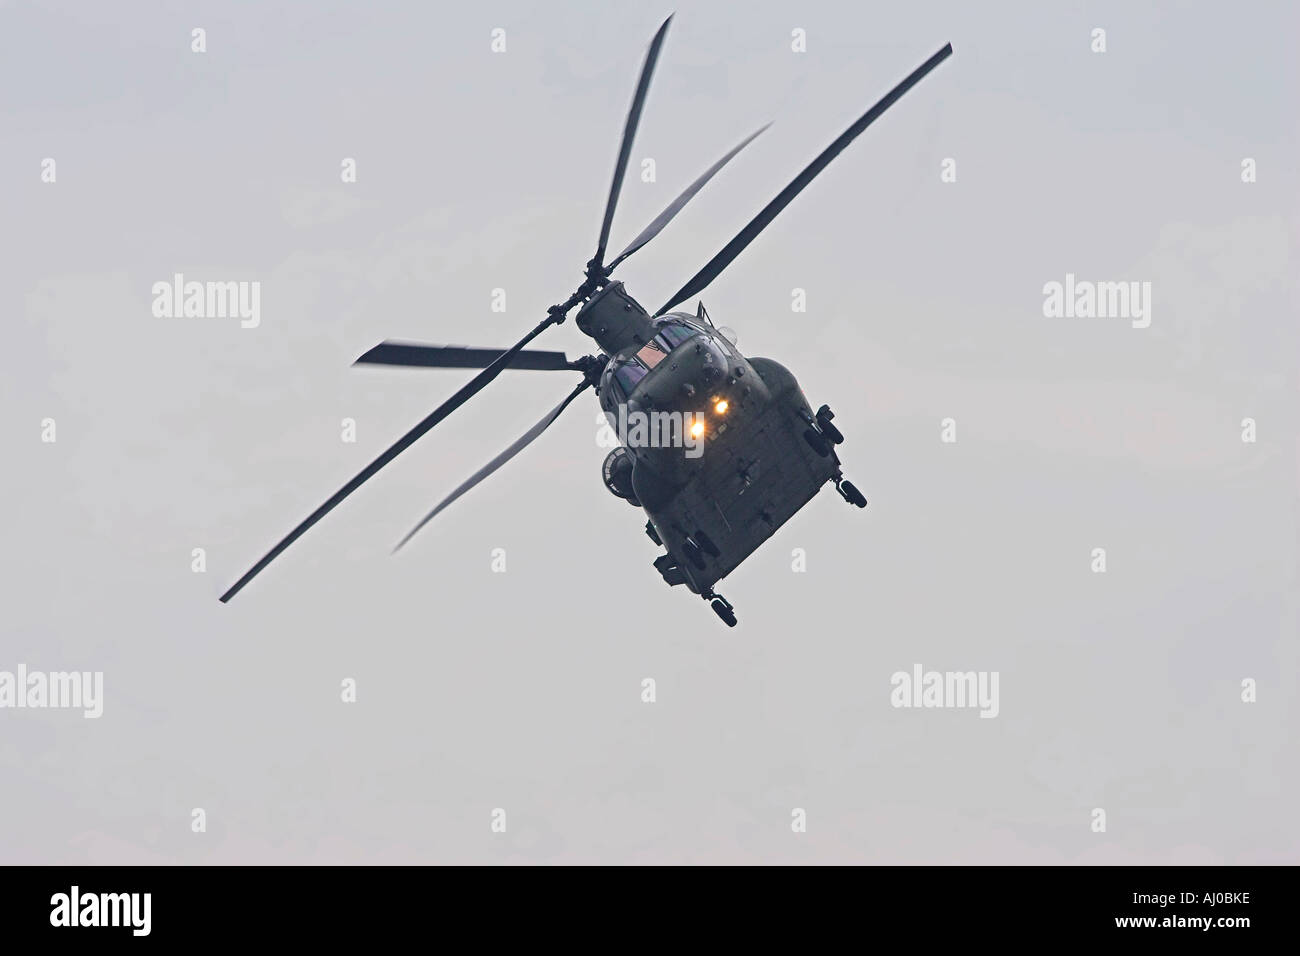 Hélicoptère de transport lourd Chinook de la raf Banque D'Images